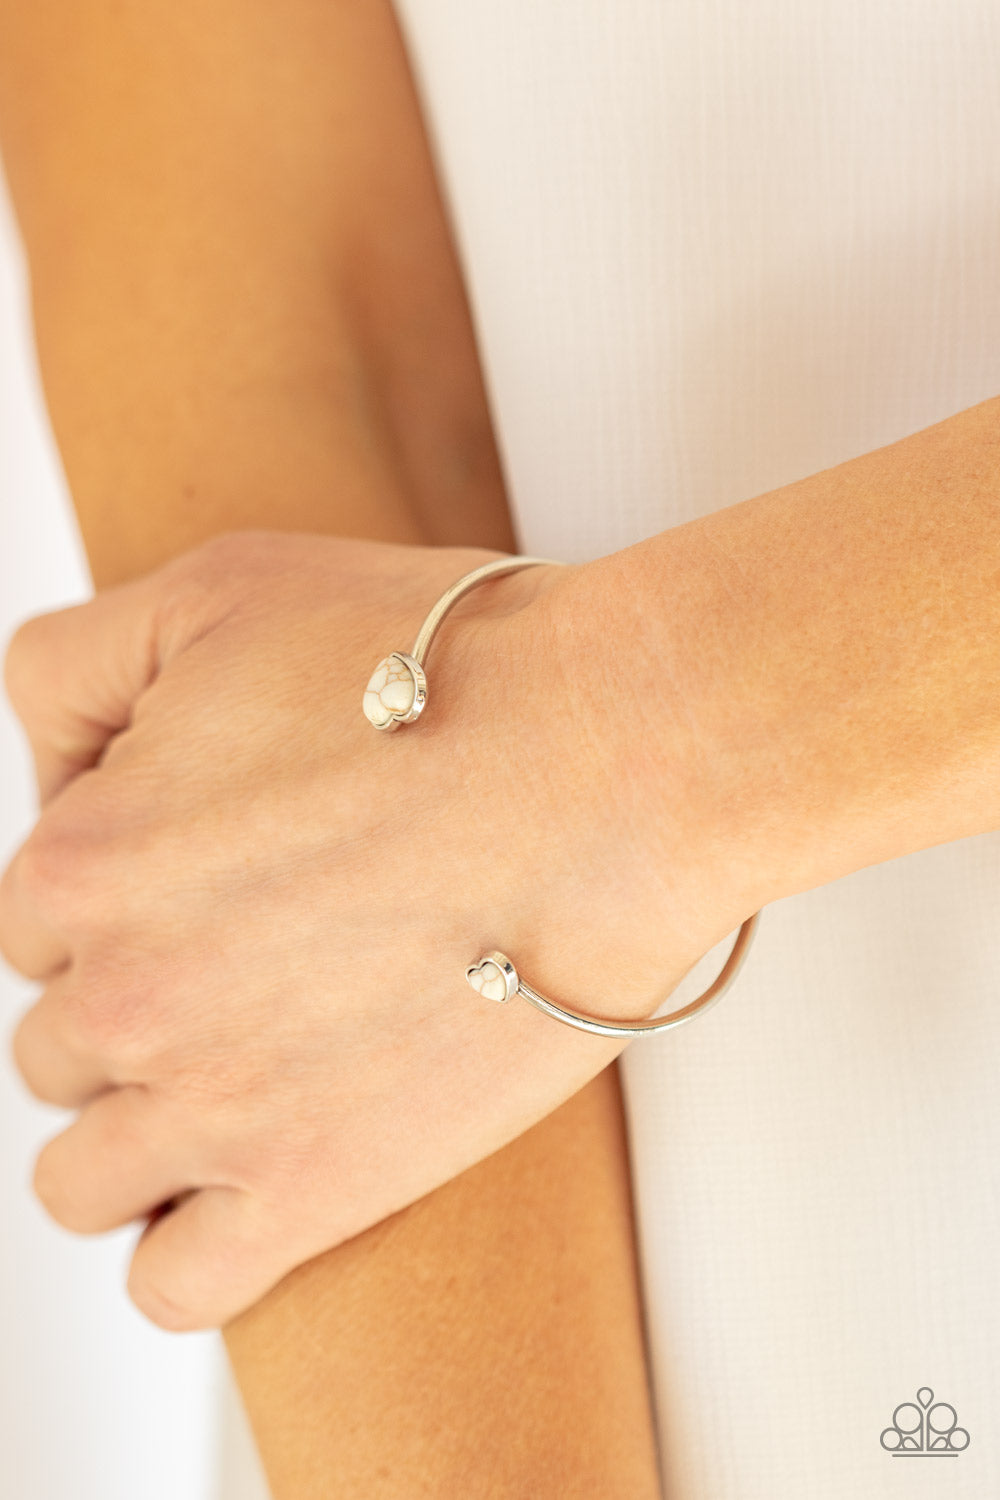 Romantically Rustic White Bracelet - Daria's Blings N Things